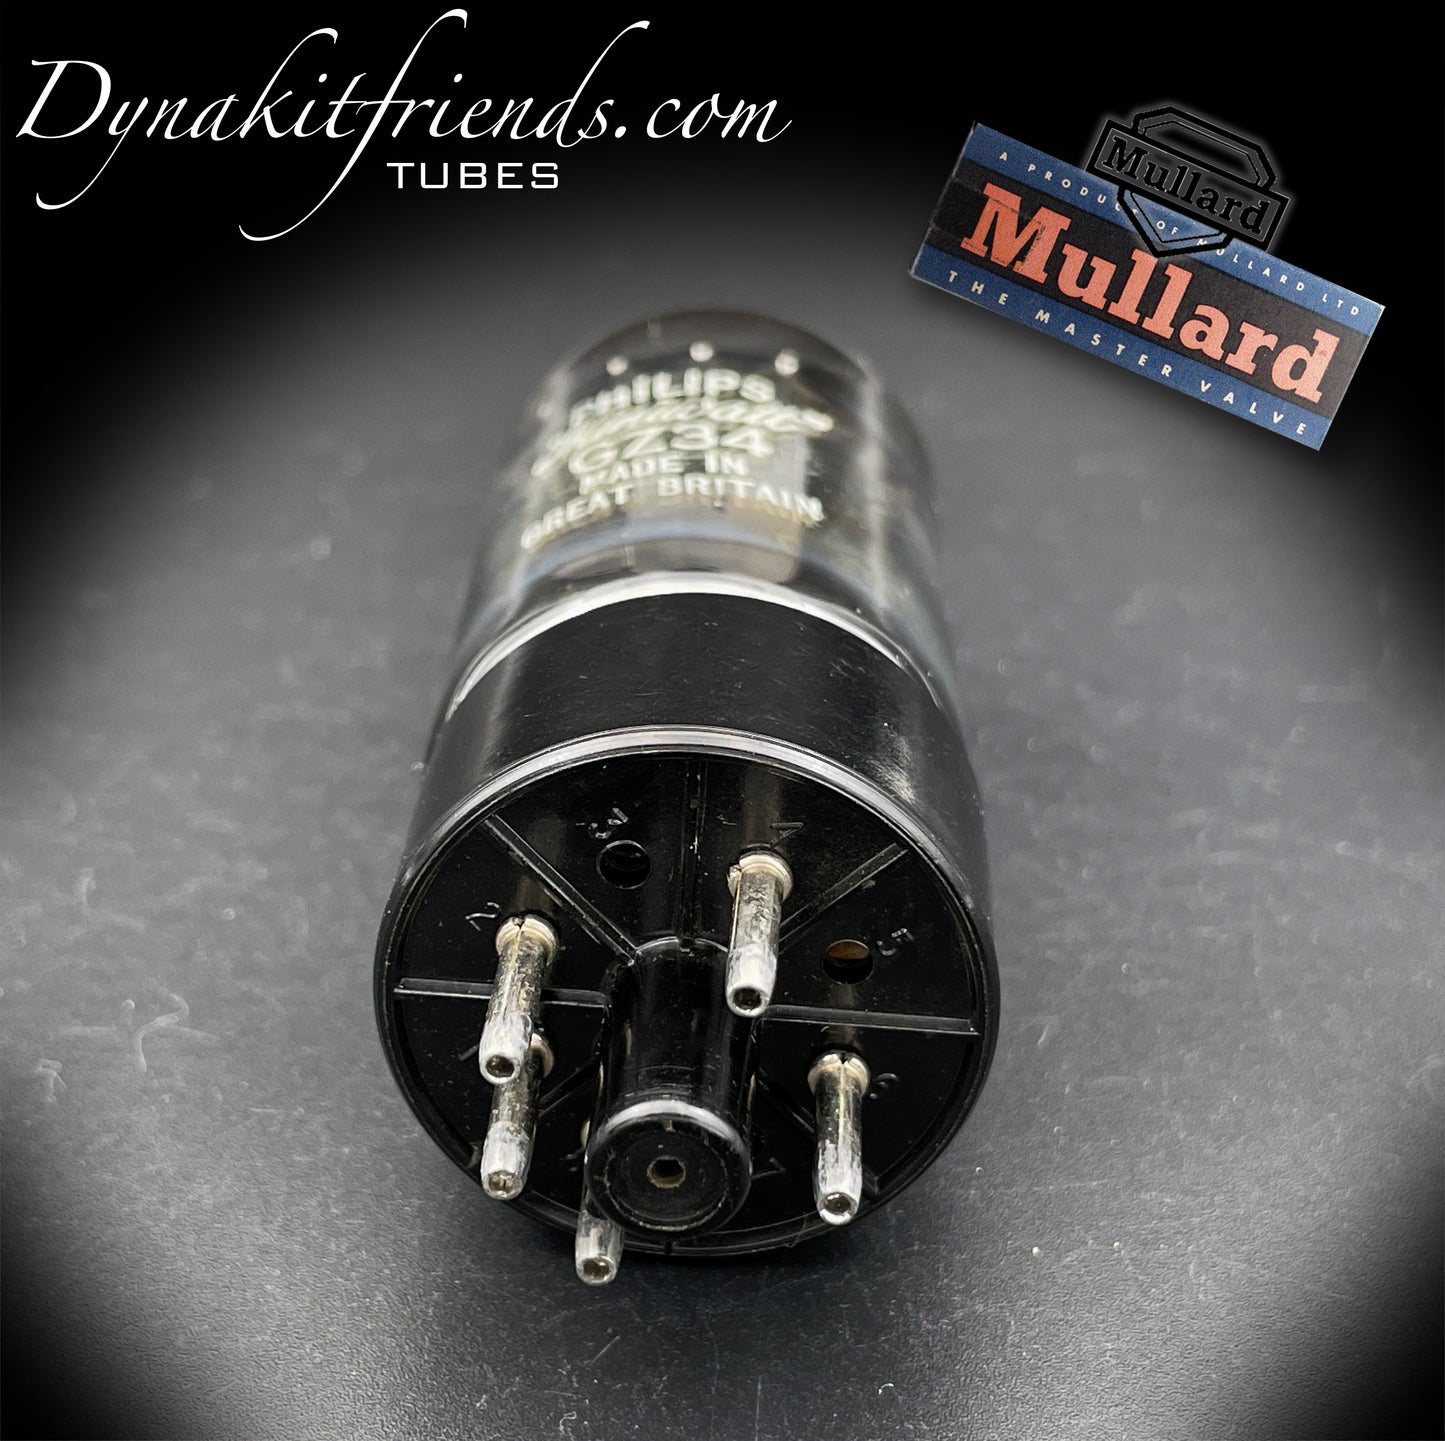 GZ34 (5AR4) MULLARD Blackburn für Philips Miniwatt 4 Kerbplatten Röhrengleichrichter Made in GT. GROSSBRITANNIEN